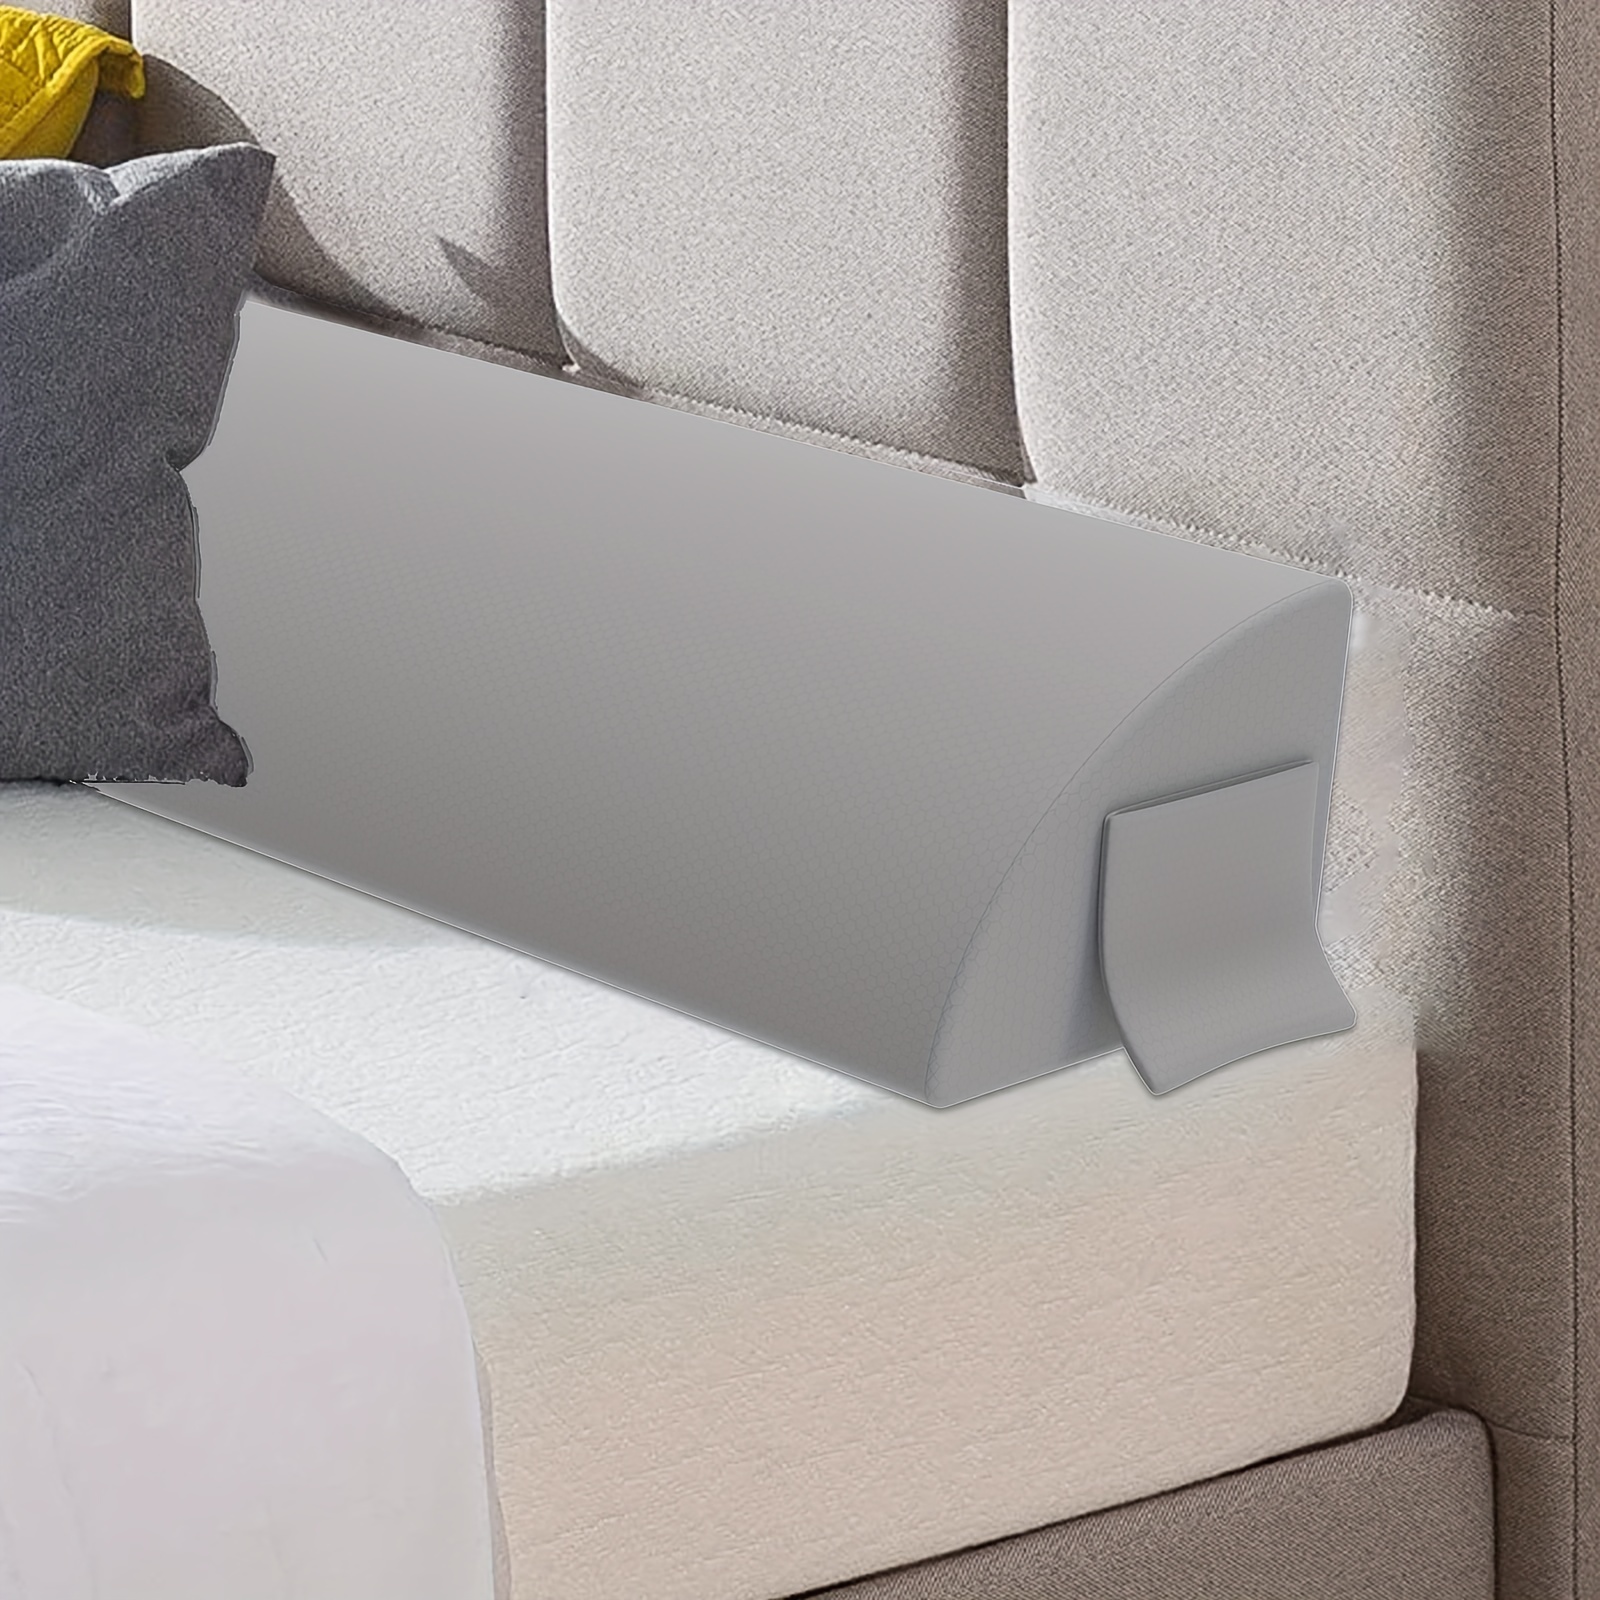  QCLUEU Relleno de espacio para cama, colchón para cama  individual/doble/king, esponja 45D de alta densidad, funda extraíble y  lavable, relleno extensor de colchón para espacio de cabecera, grietas de  espacio de